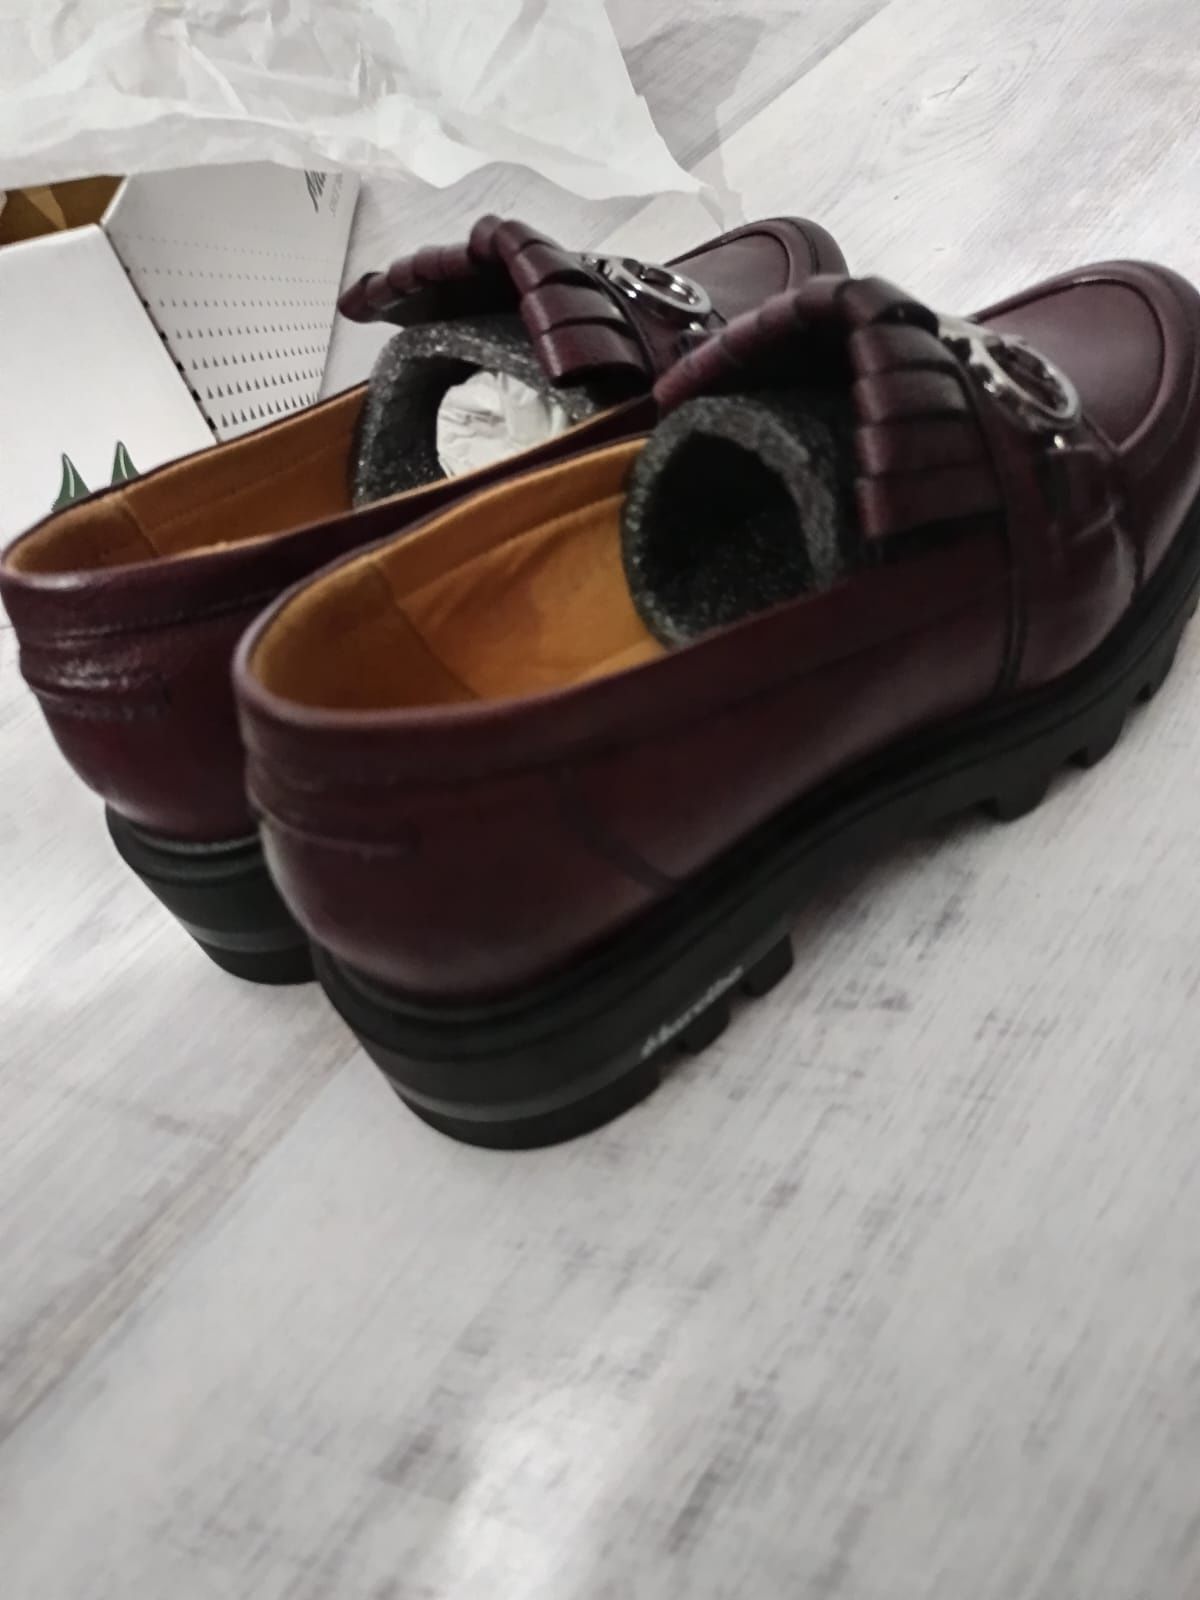 Vand pantofi noi de piele cumparati din magazinul Marelbo